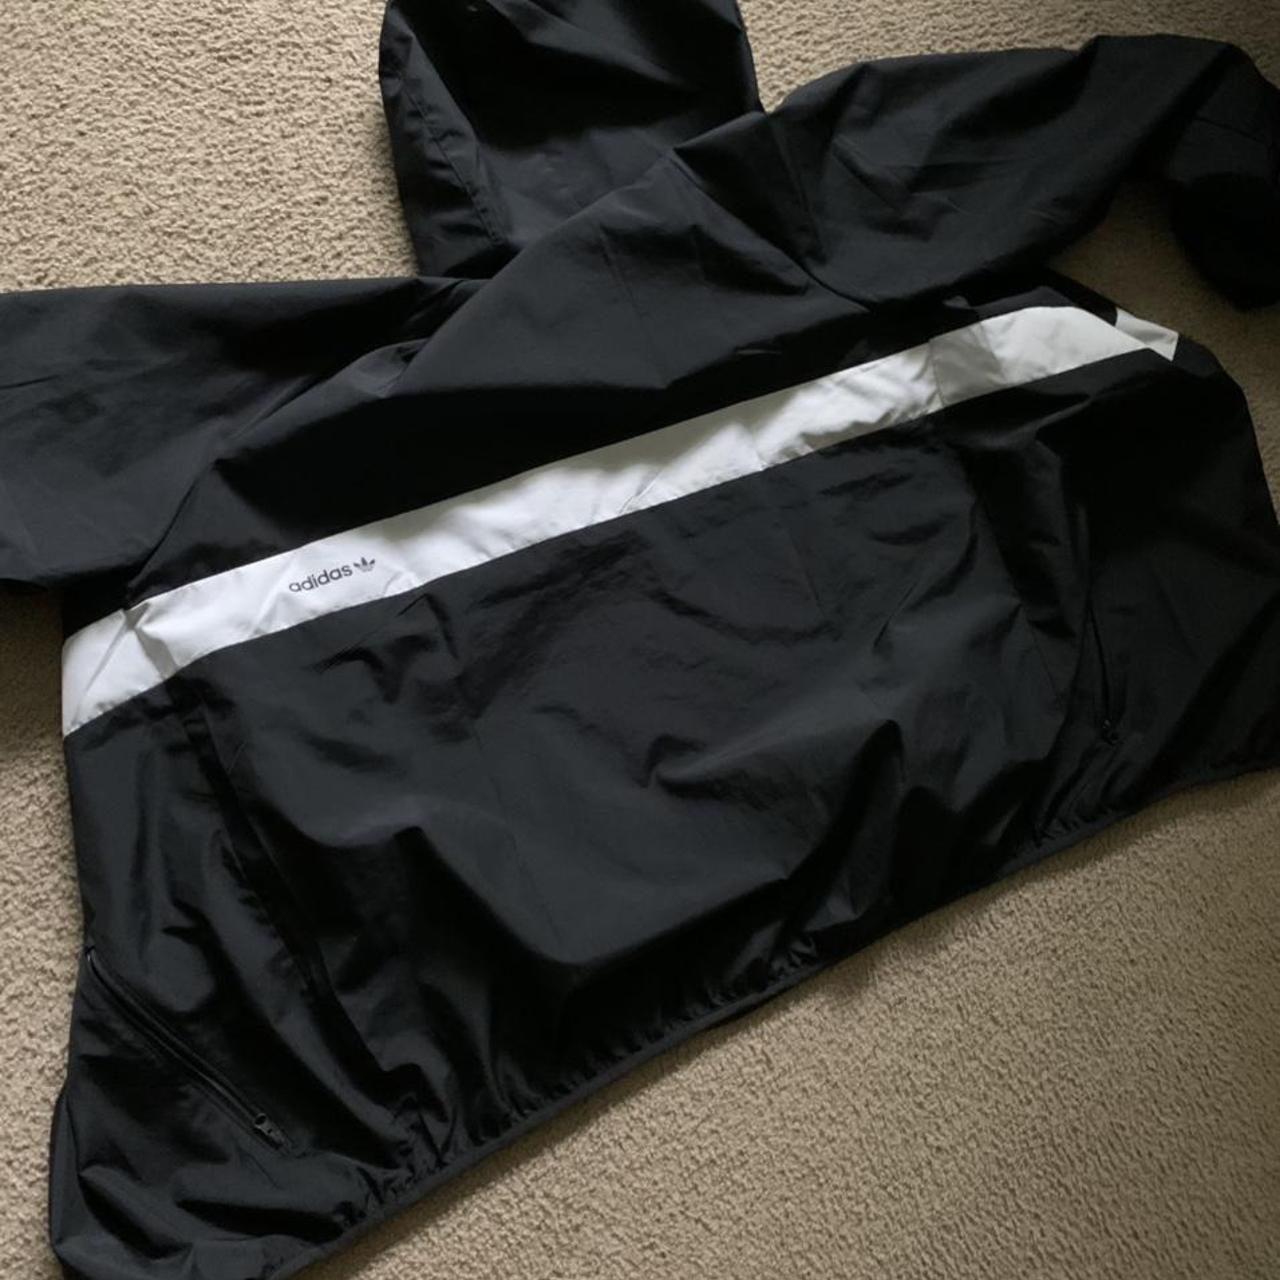 Product Image 3 - Adidas spring jacket
Light jacket, worn